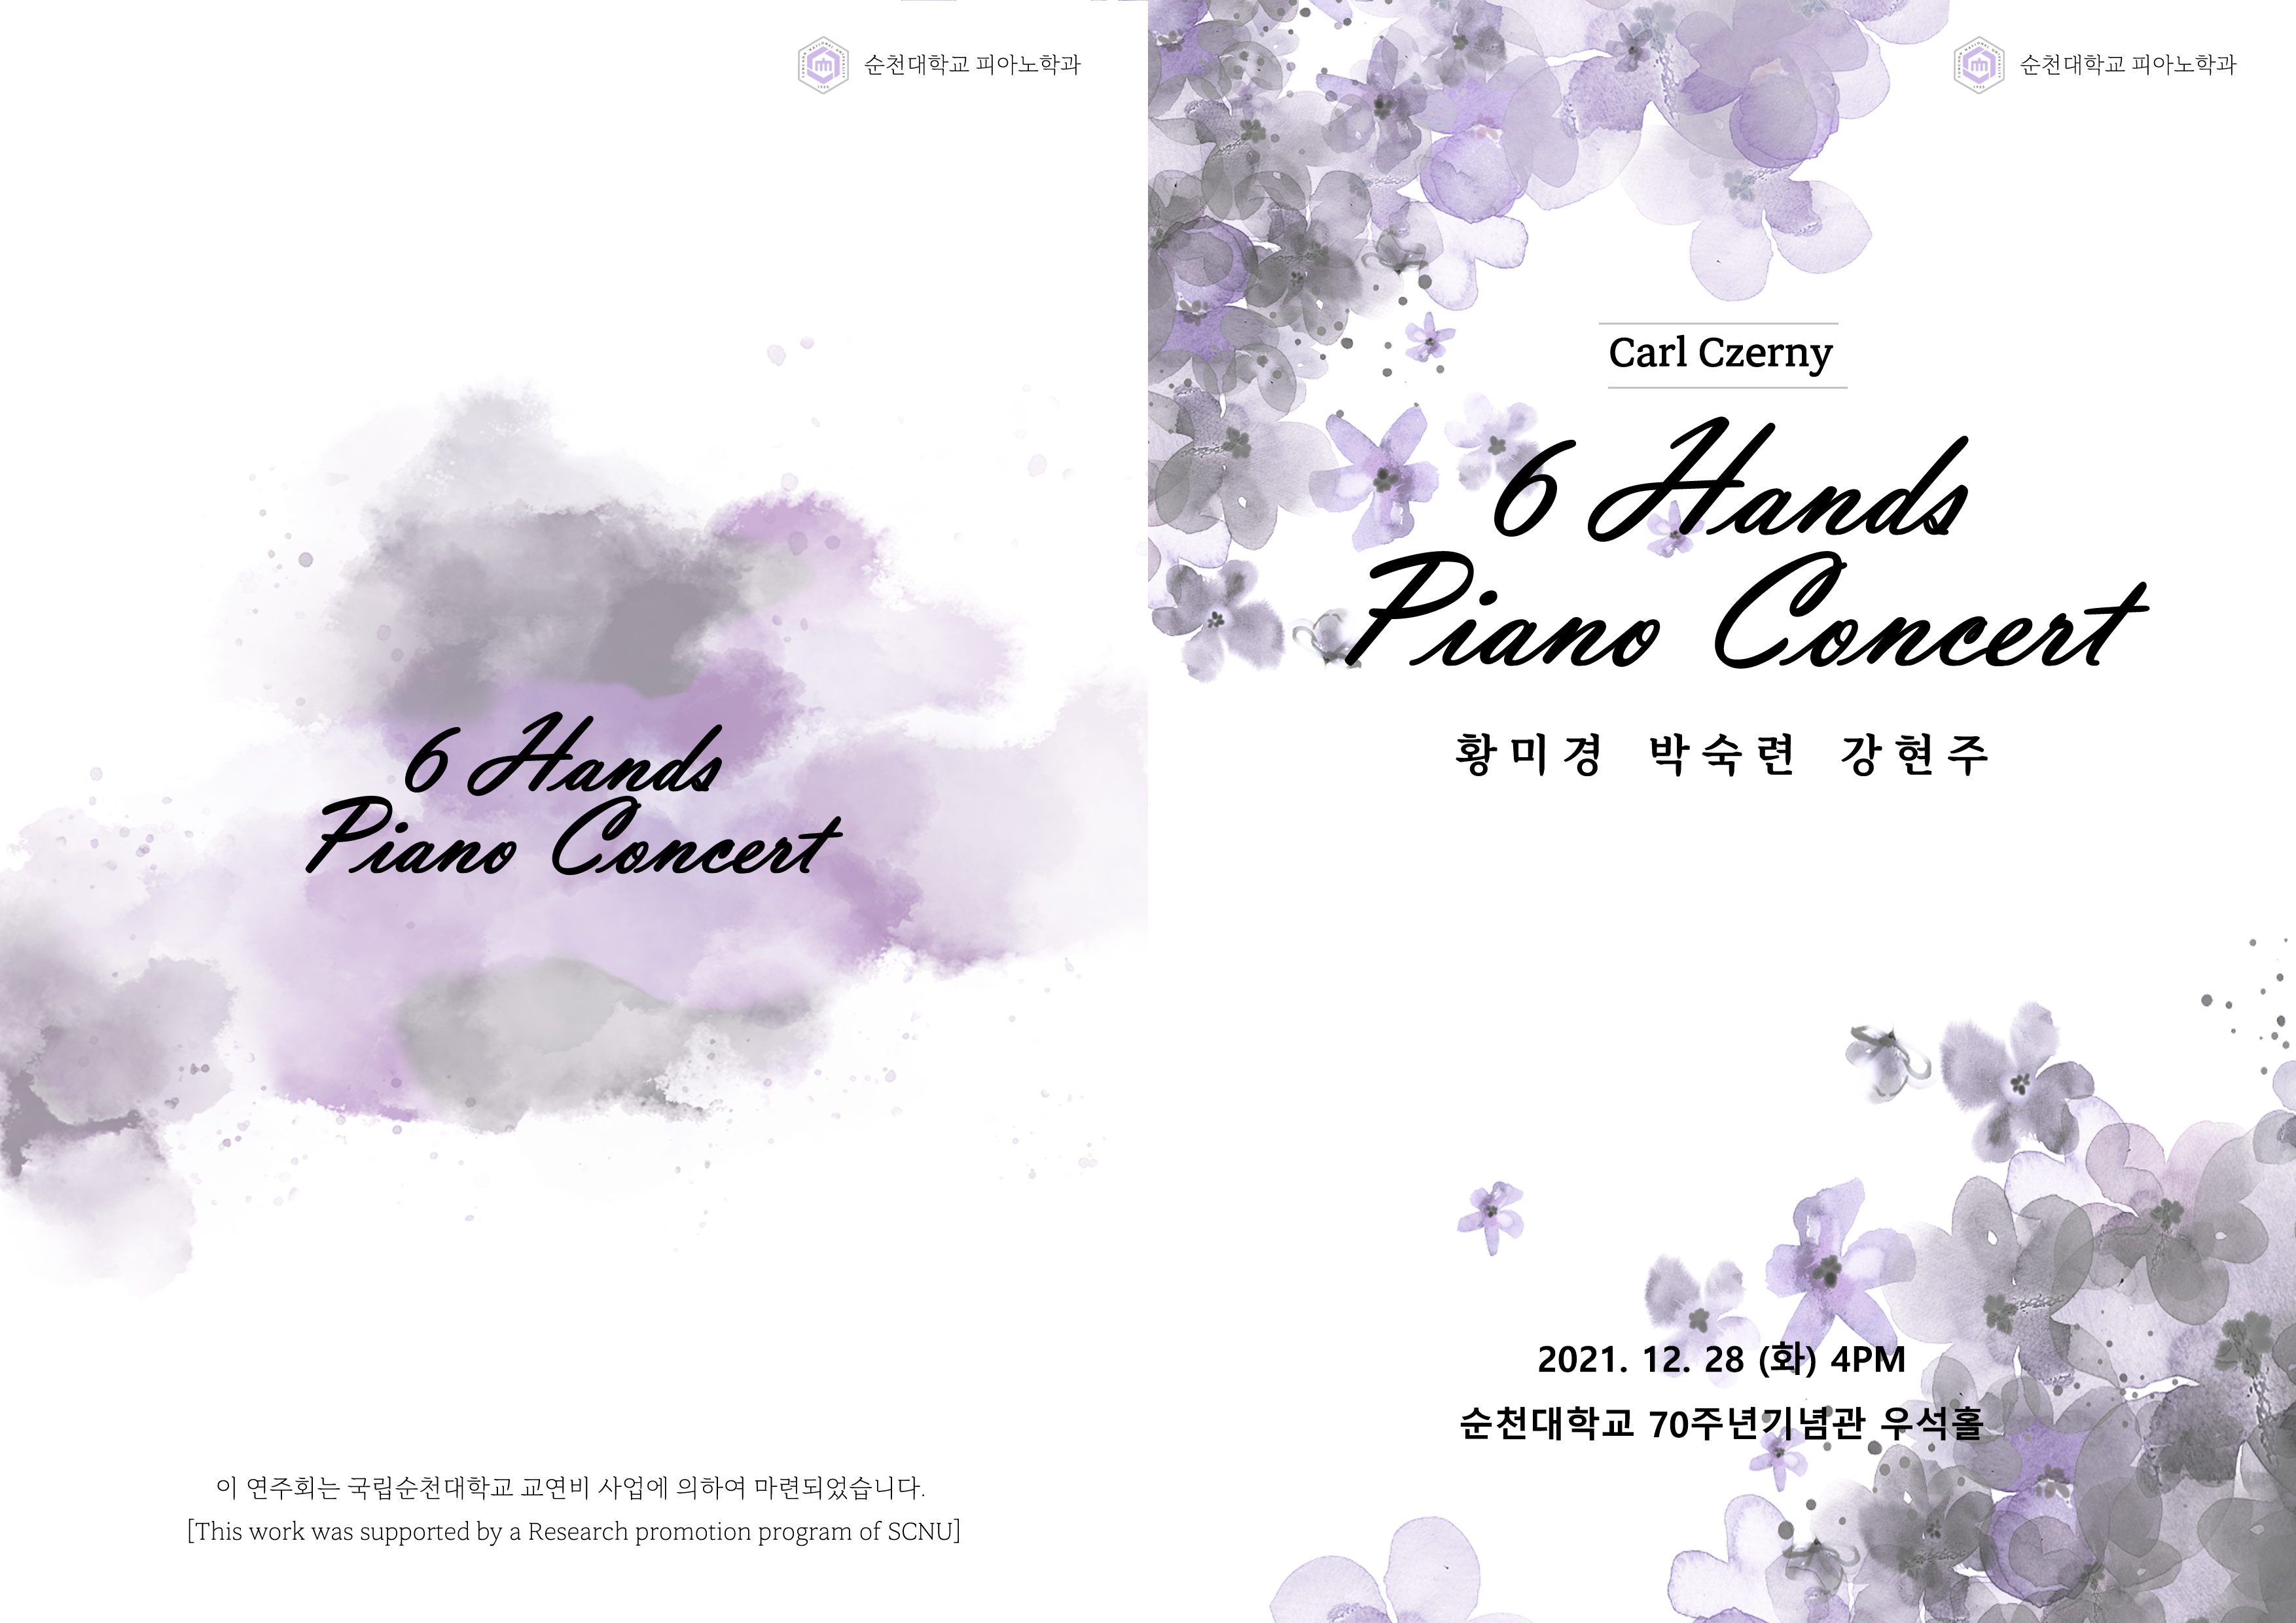 6 Hands Piano Concert 황미경 박숙련 강현주 교수님 연주회 개최 안내 상세정보 페이지로 이동하기